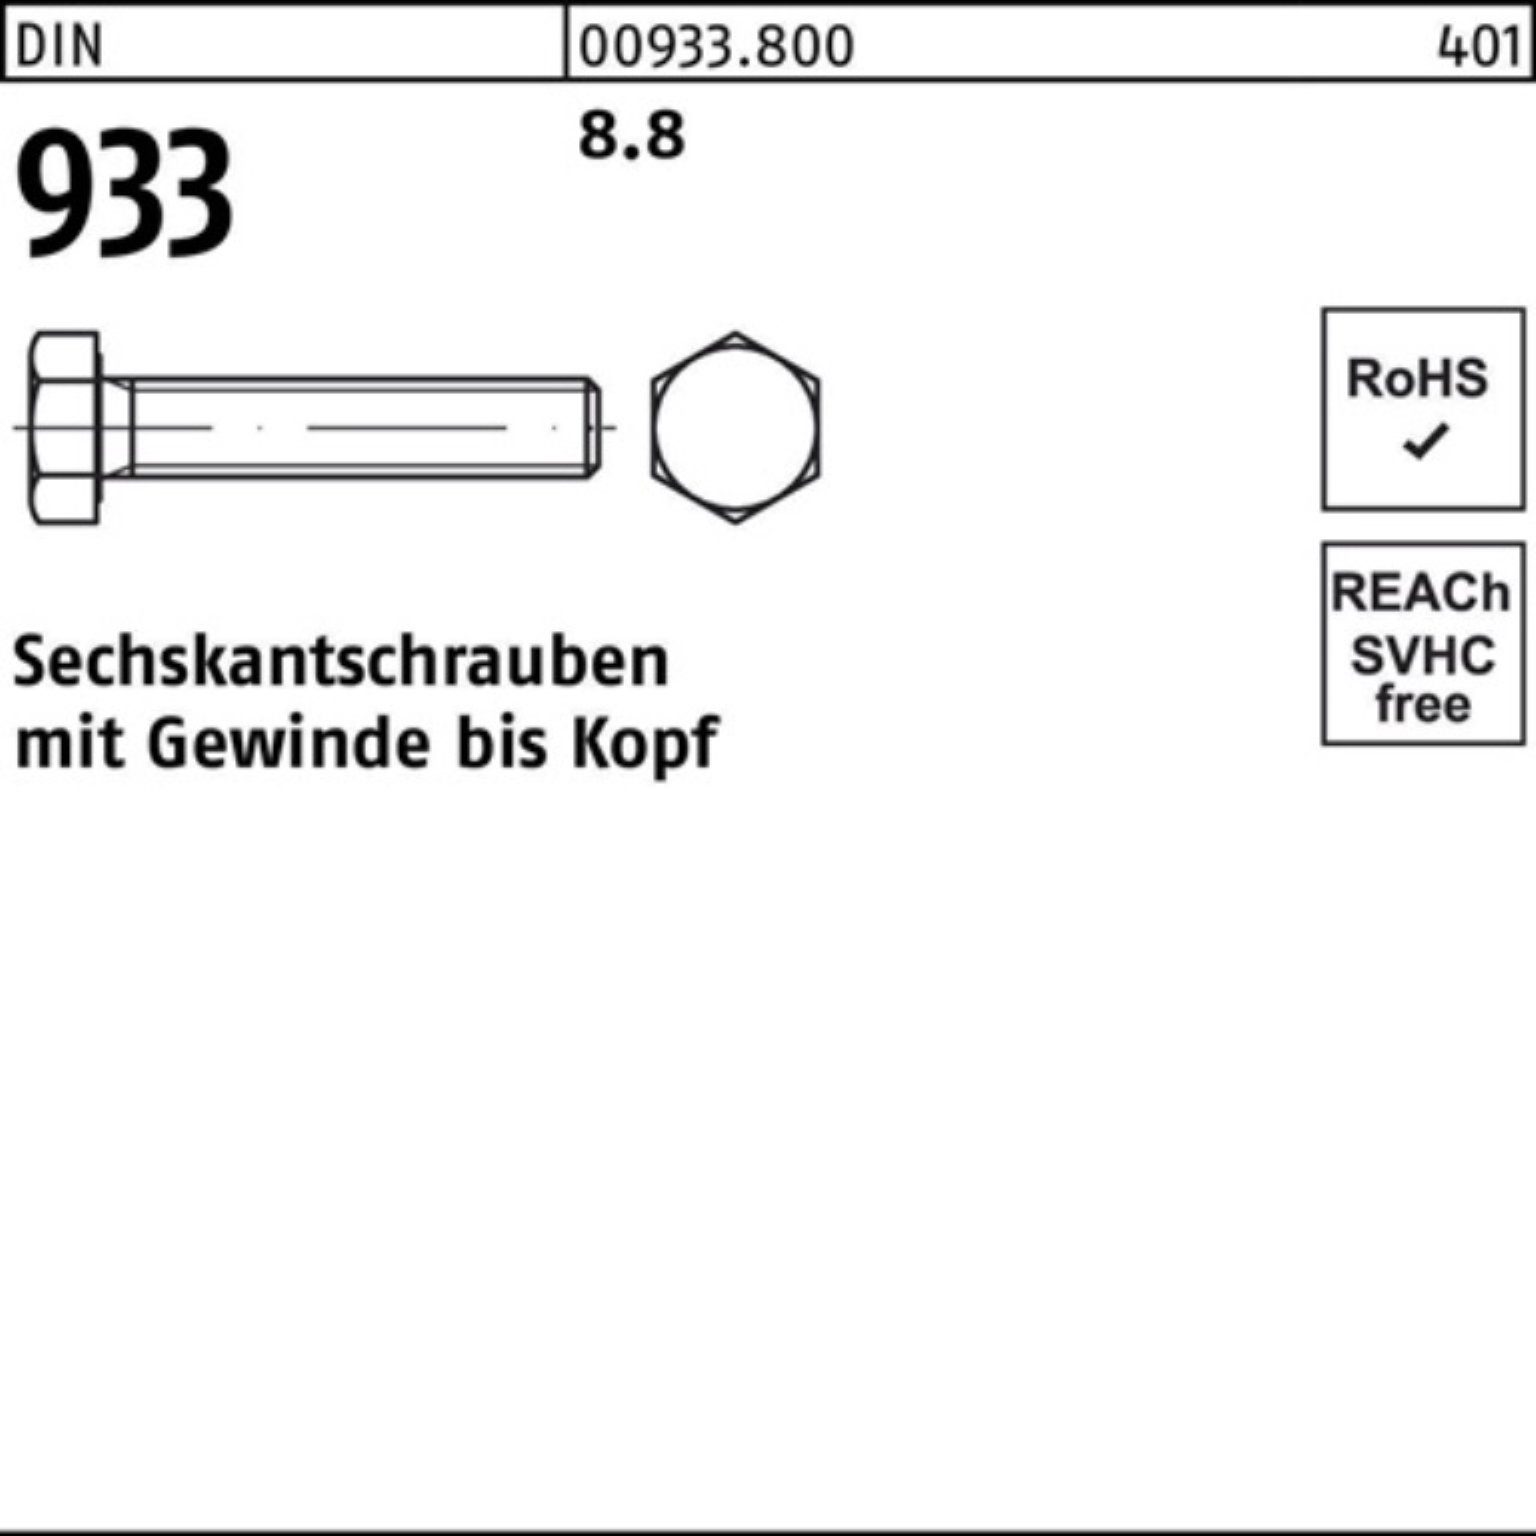 Pack 170 DIN Stück Sechskantschraube 933 933 1 VG Reyher M27x 8.8 Sechskantschraube 100er DIN